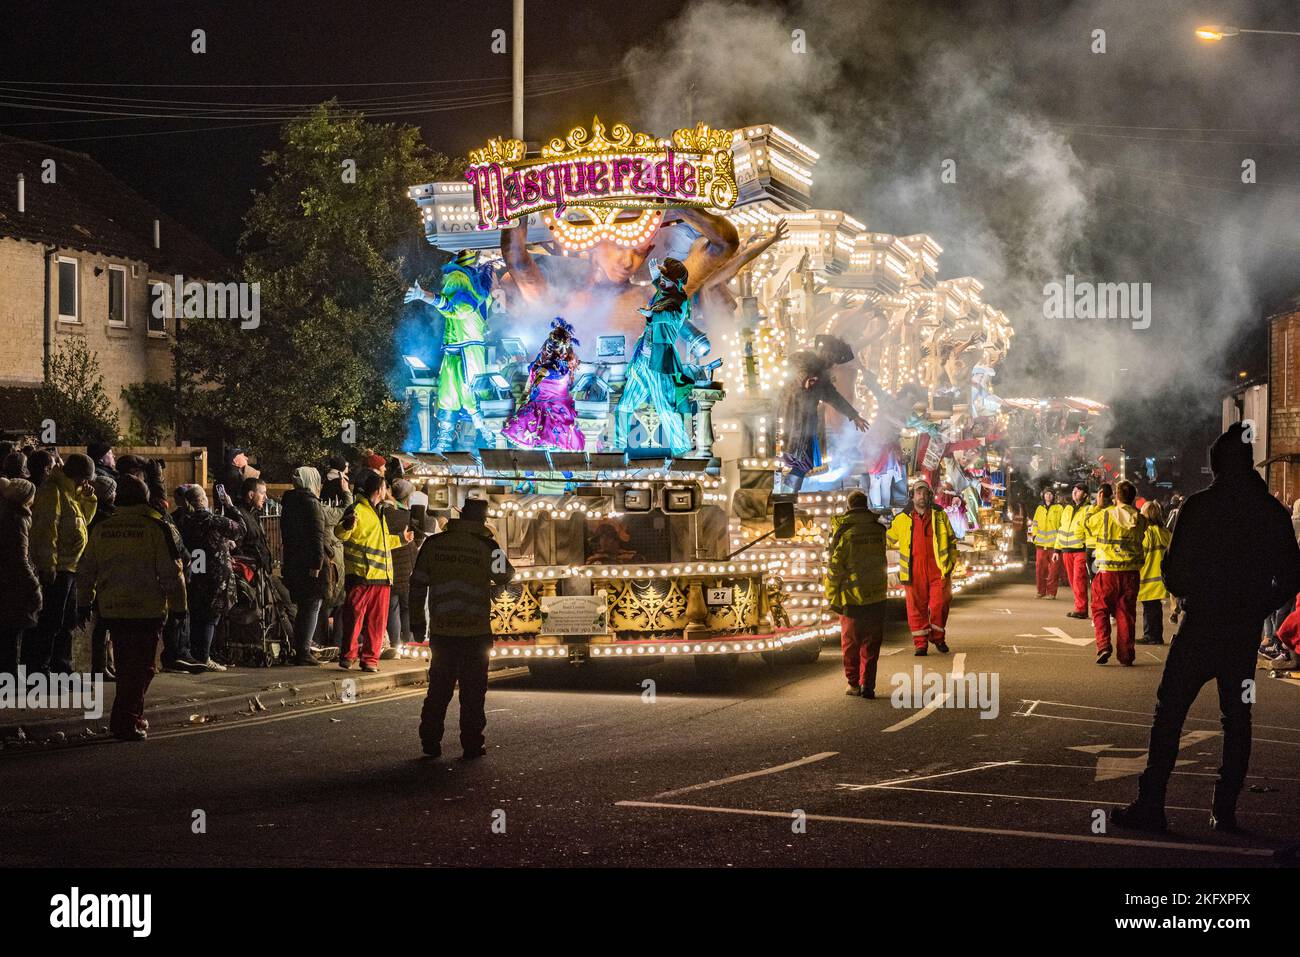 Ein spektakulärer beleuchteter Floß (oder „Wagen“, wie sie vor Ort bekannt sind) beim jährlichen Karneval in Wells City im November. Es erinnert an das Schießpulver-Plot von 1605. Die Prozession wiederholt sich in einer Reihe von Städten im West Country – Wells ist Teil des Somerset County Guy Fawkes Carnival Association Circuit. 2022 war der erste Karneval nach zwei Jahren Annullierungen aufgrund der Pandemie. Stockfoto